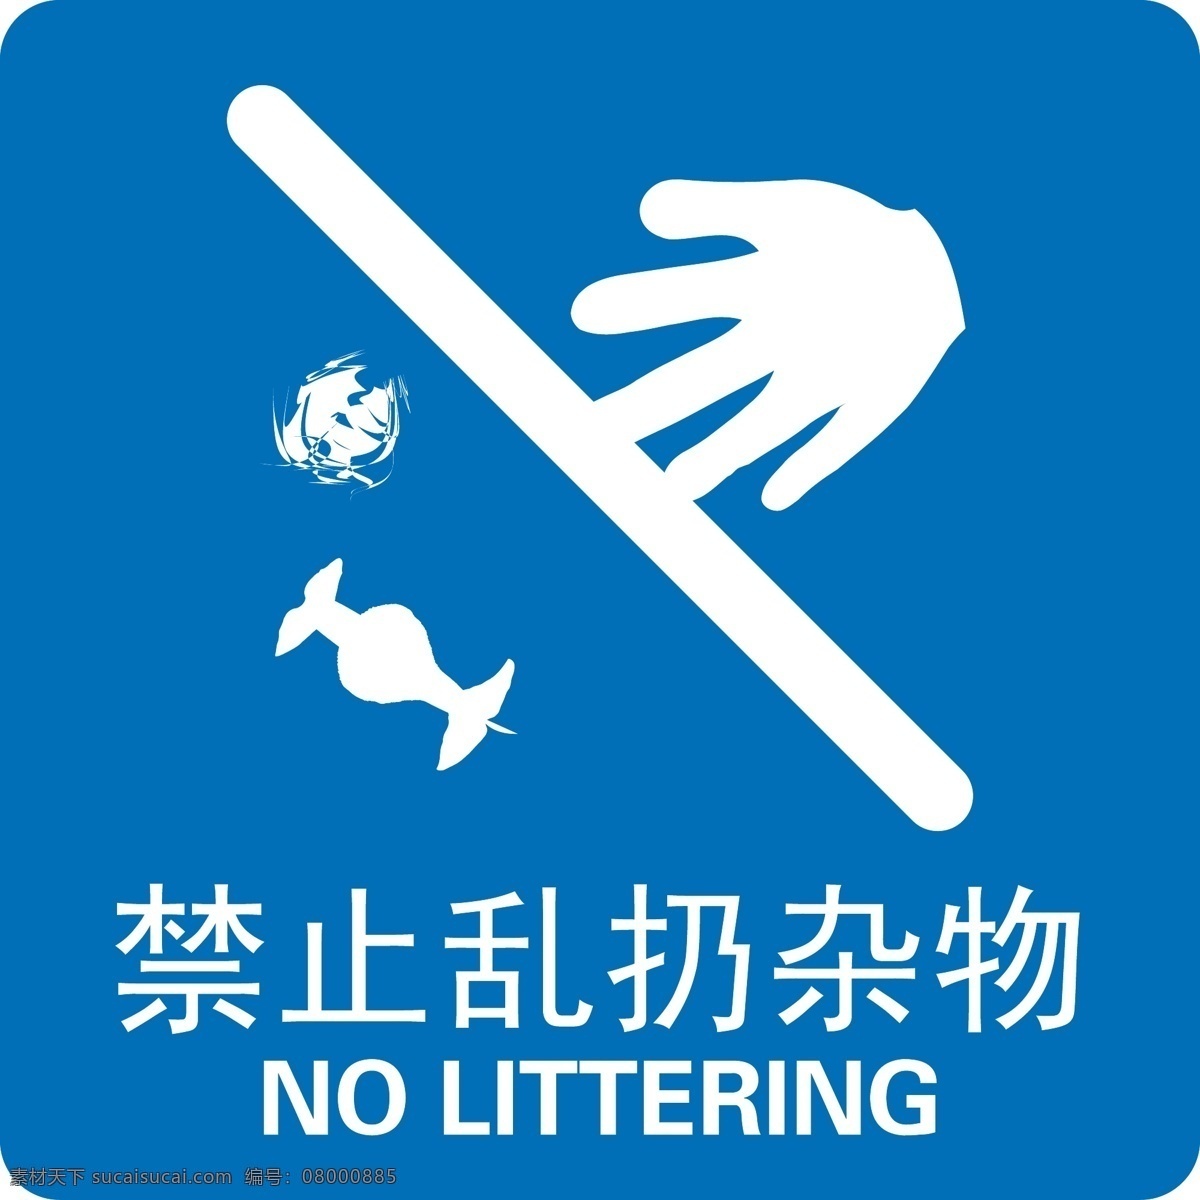 禁止乱扔杂物 禁止 杂物 矢量 标示 标志 标识 公共标识标志 标识标志图标